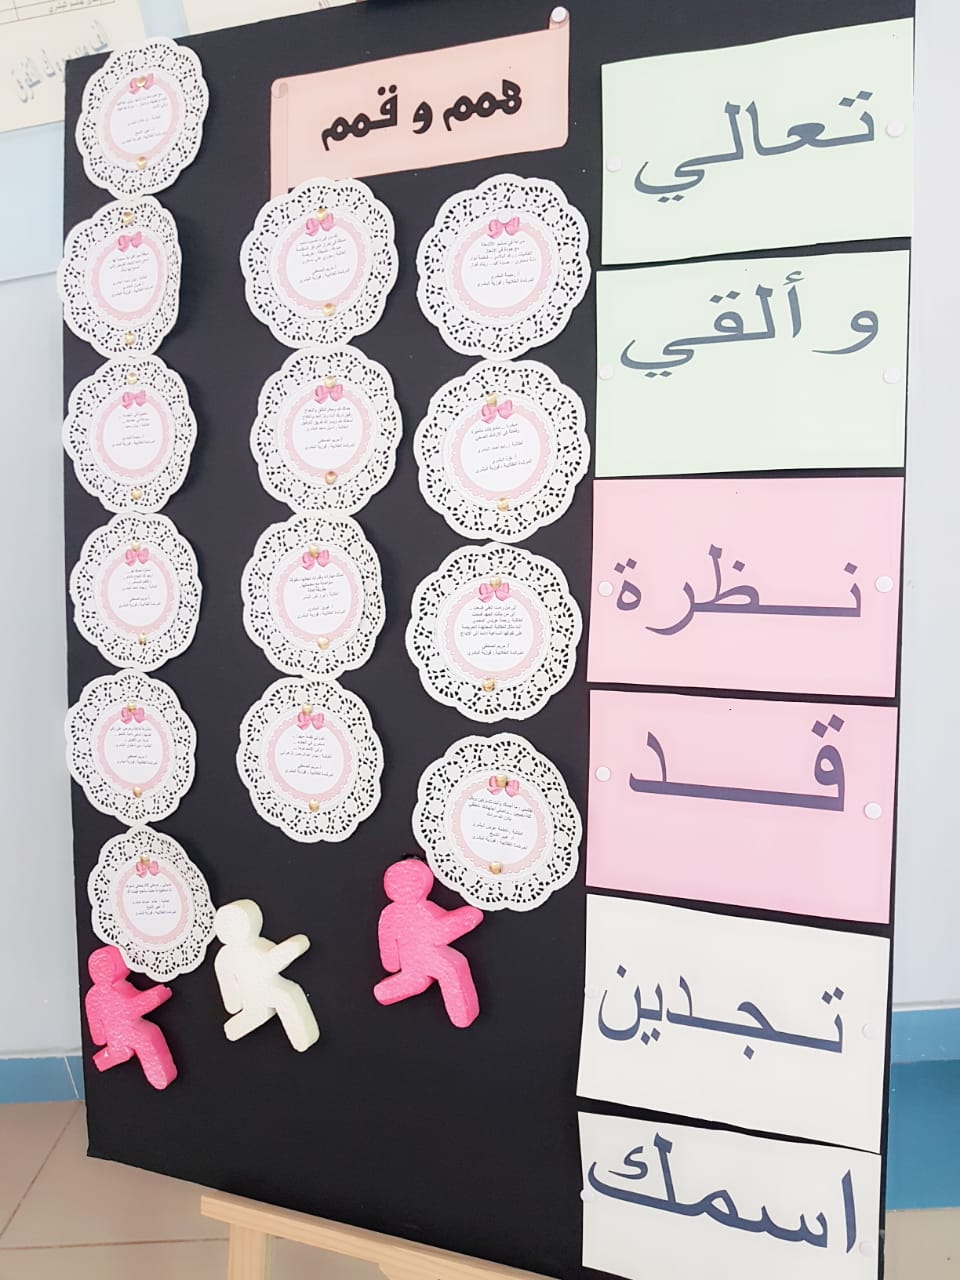 متوسطة و ثانوية الشامية لوحة تعزيز من المرشدة الطلابية للطالبات